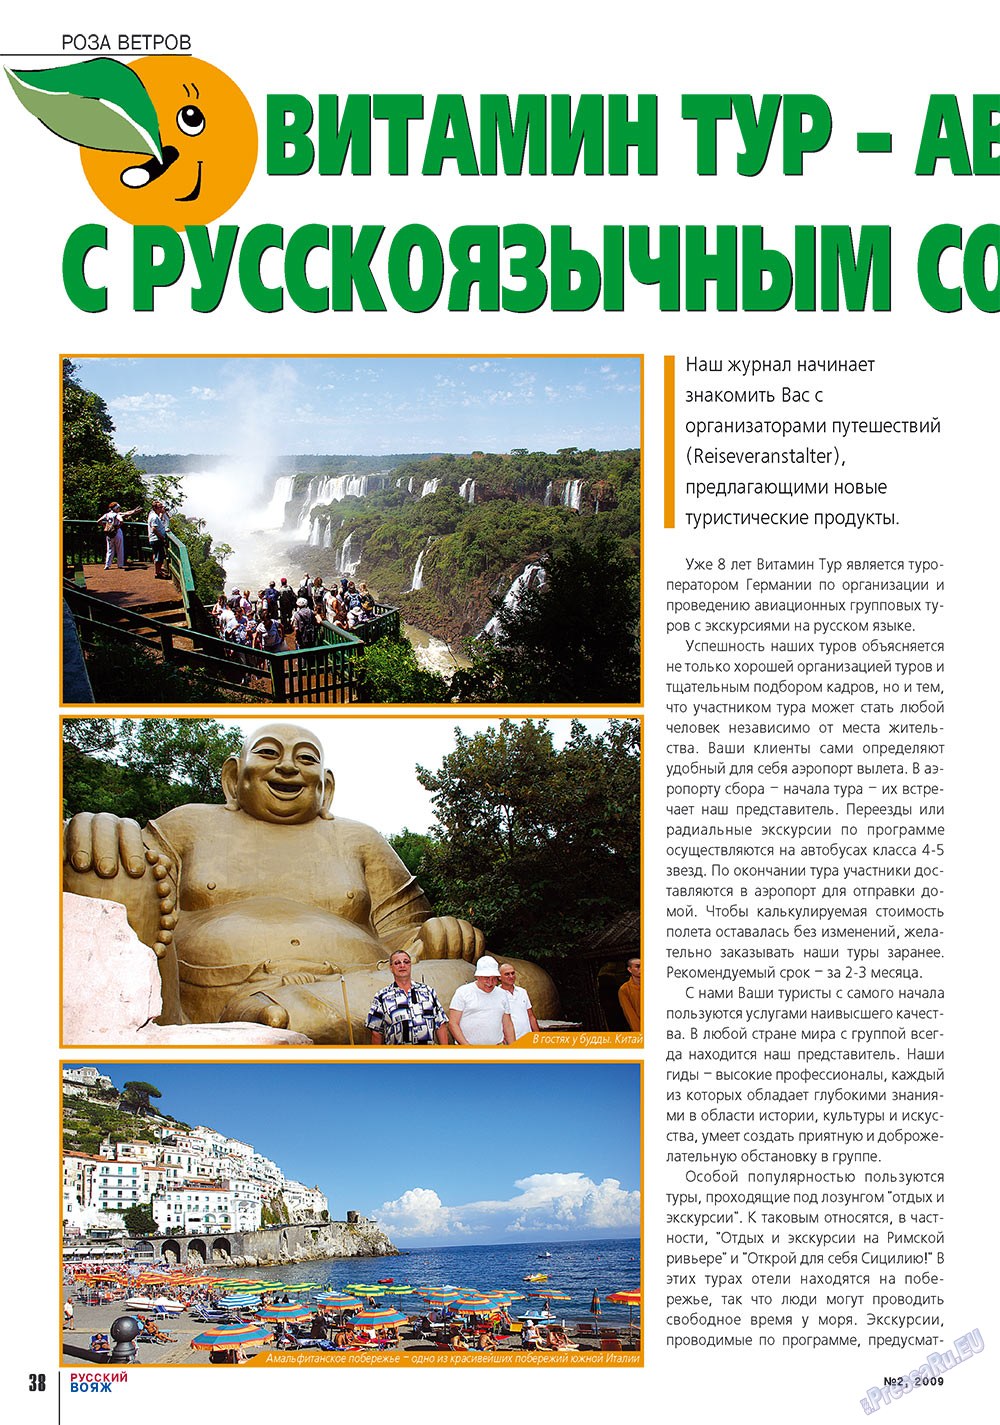 Русский вояж (журнал). 2009 год, номер 2, стр. 38